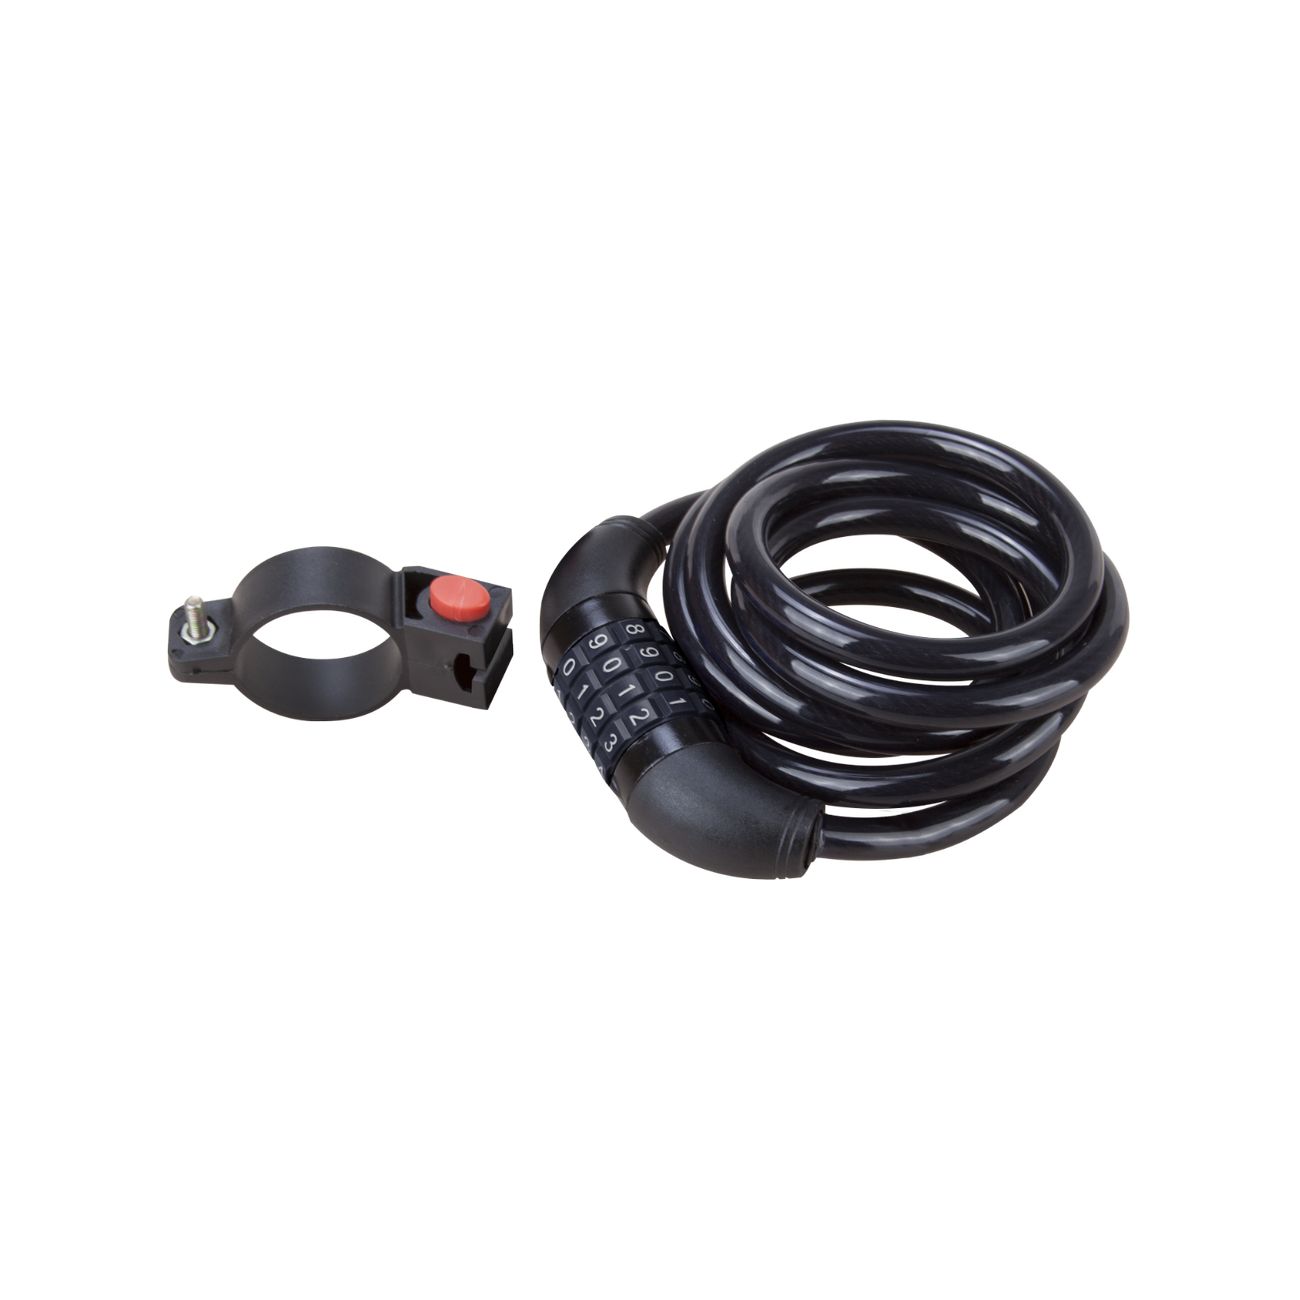 Lacate si seifuri - Lacat cablu cu protectie si cifru pentru bicicleta, d.10mm 800, bilden.ro